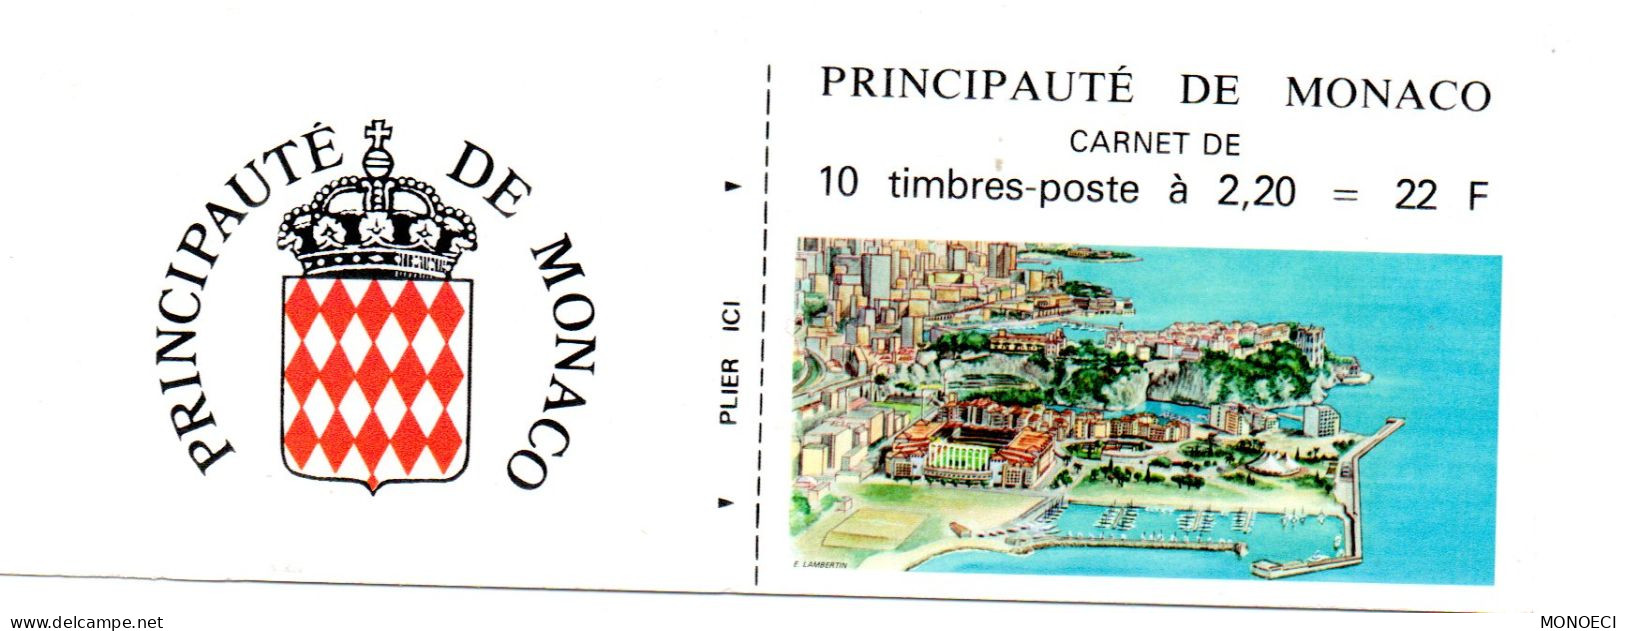 MONACO --  Monégasque -- Carnet -- Timbres 2,20 Francs 1987 -- Armoiries Stylisées - Libretti